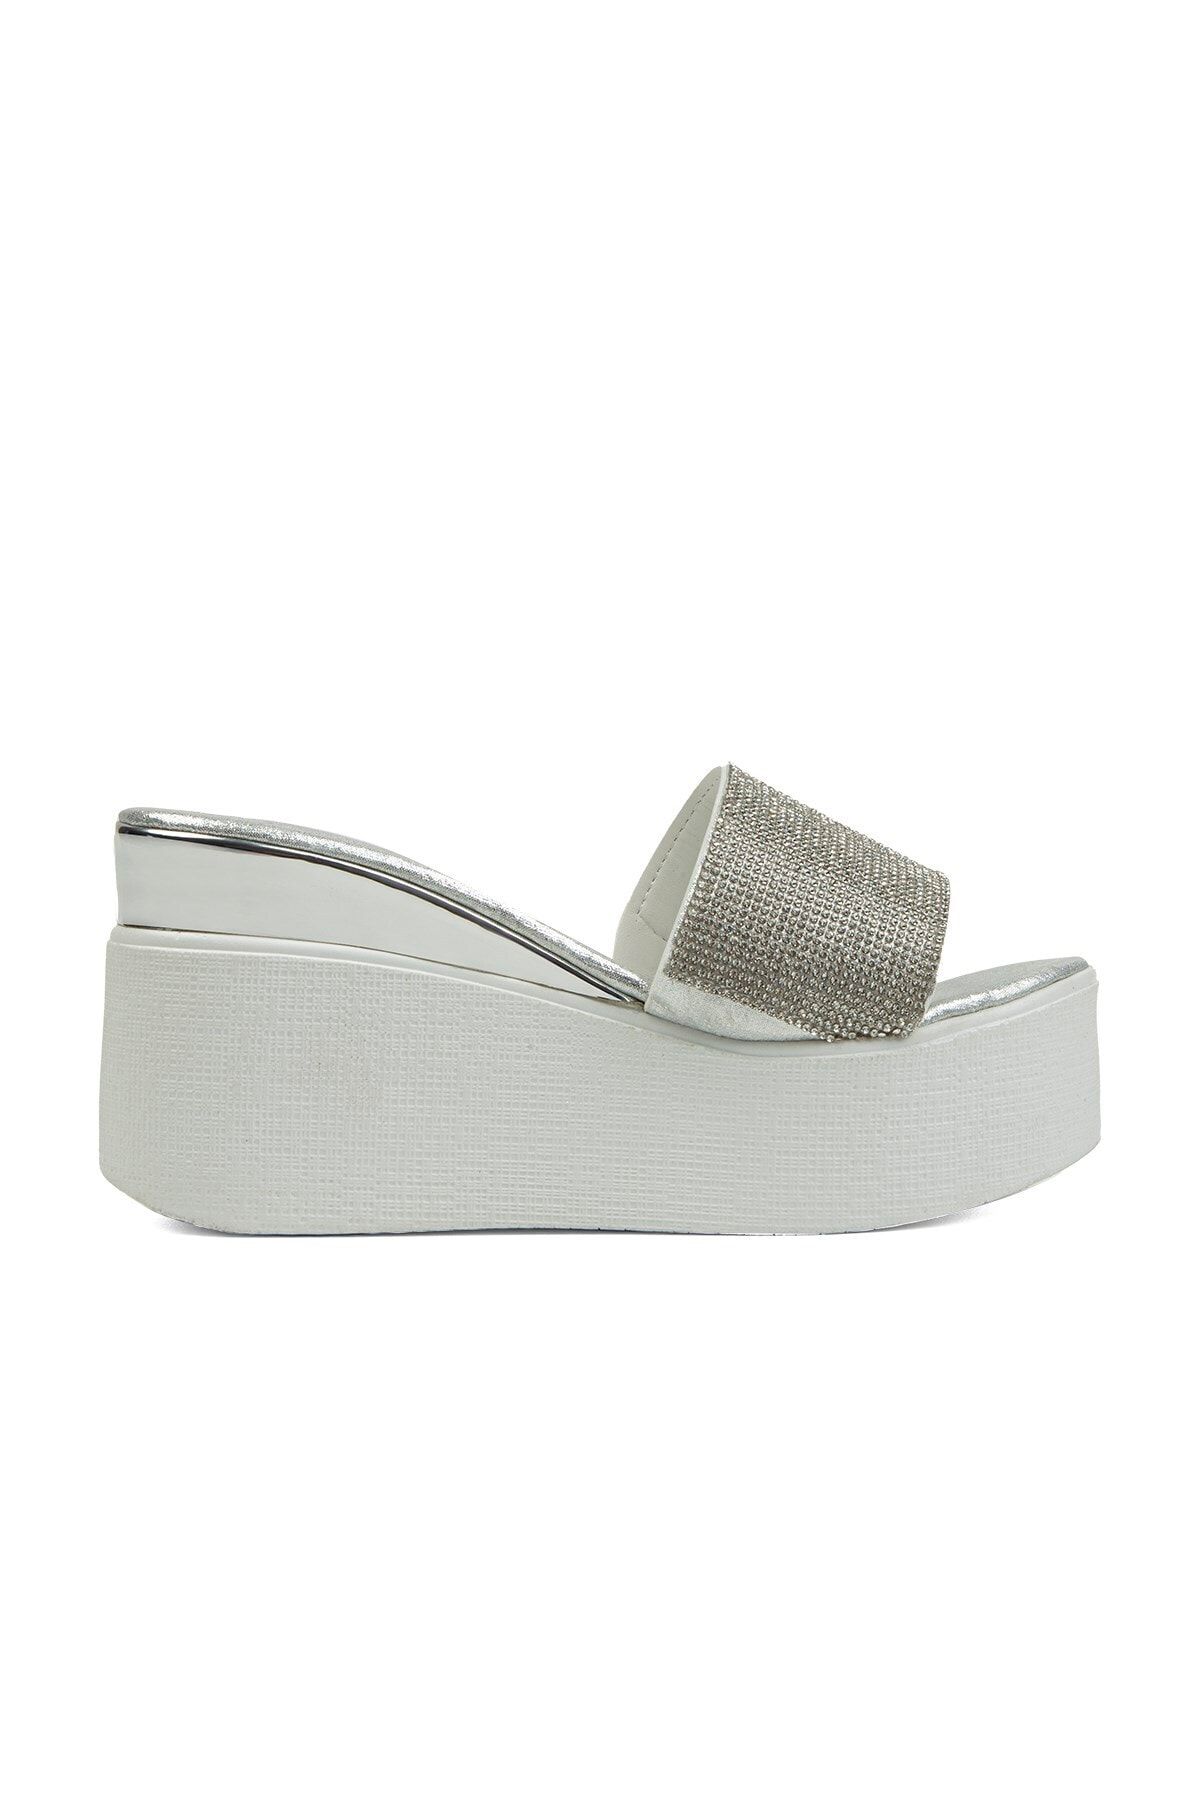 Pierre Cardin Pc-51261 Kadın Sandalet Gümüş